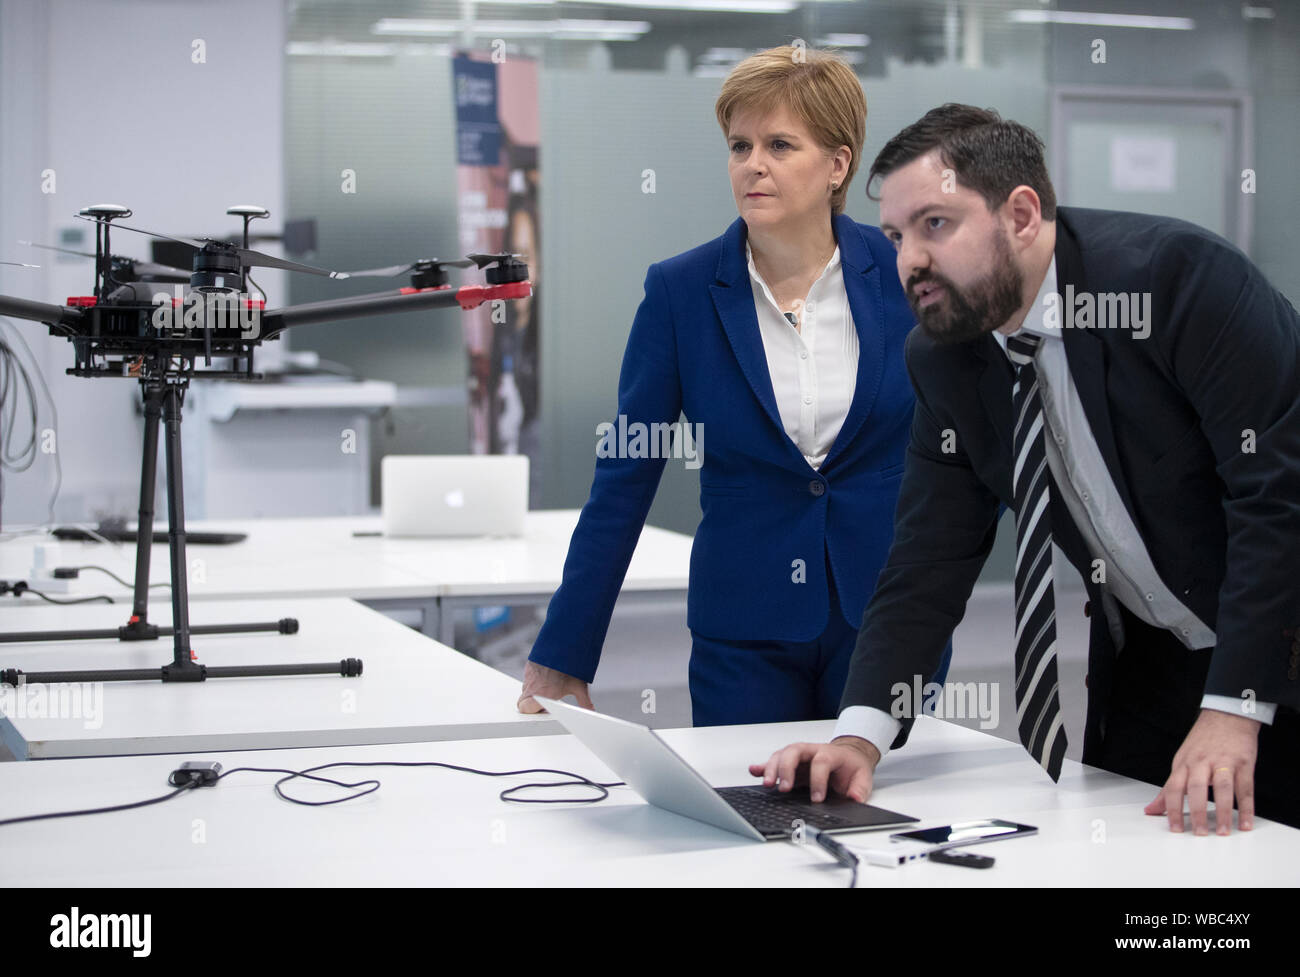 Premier Ministre de l'Écosse Nicola Sturgeon répond aux doctorant John Pedro Battistella Nadas, lors d'une visite à l'École de génie de l'Université de Glasgow, où le gouvernement écossais a dévoilé un nouveau plan de 5g. Banque D'Images